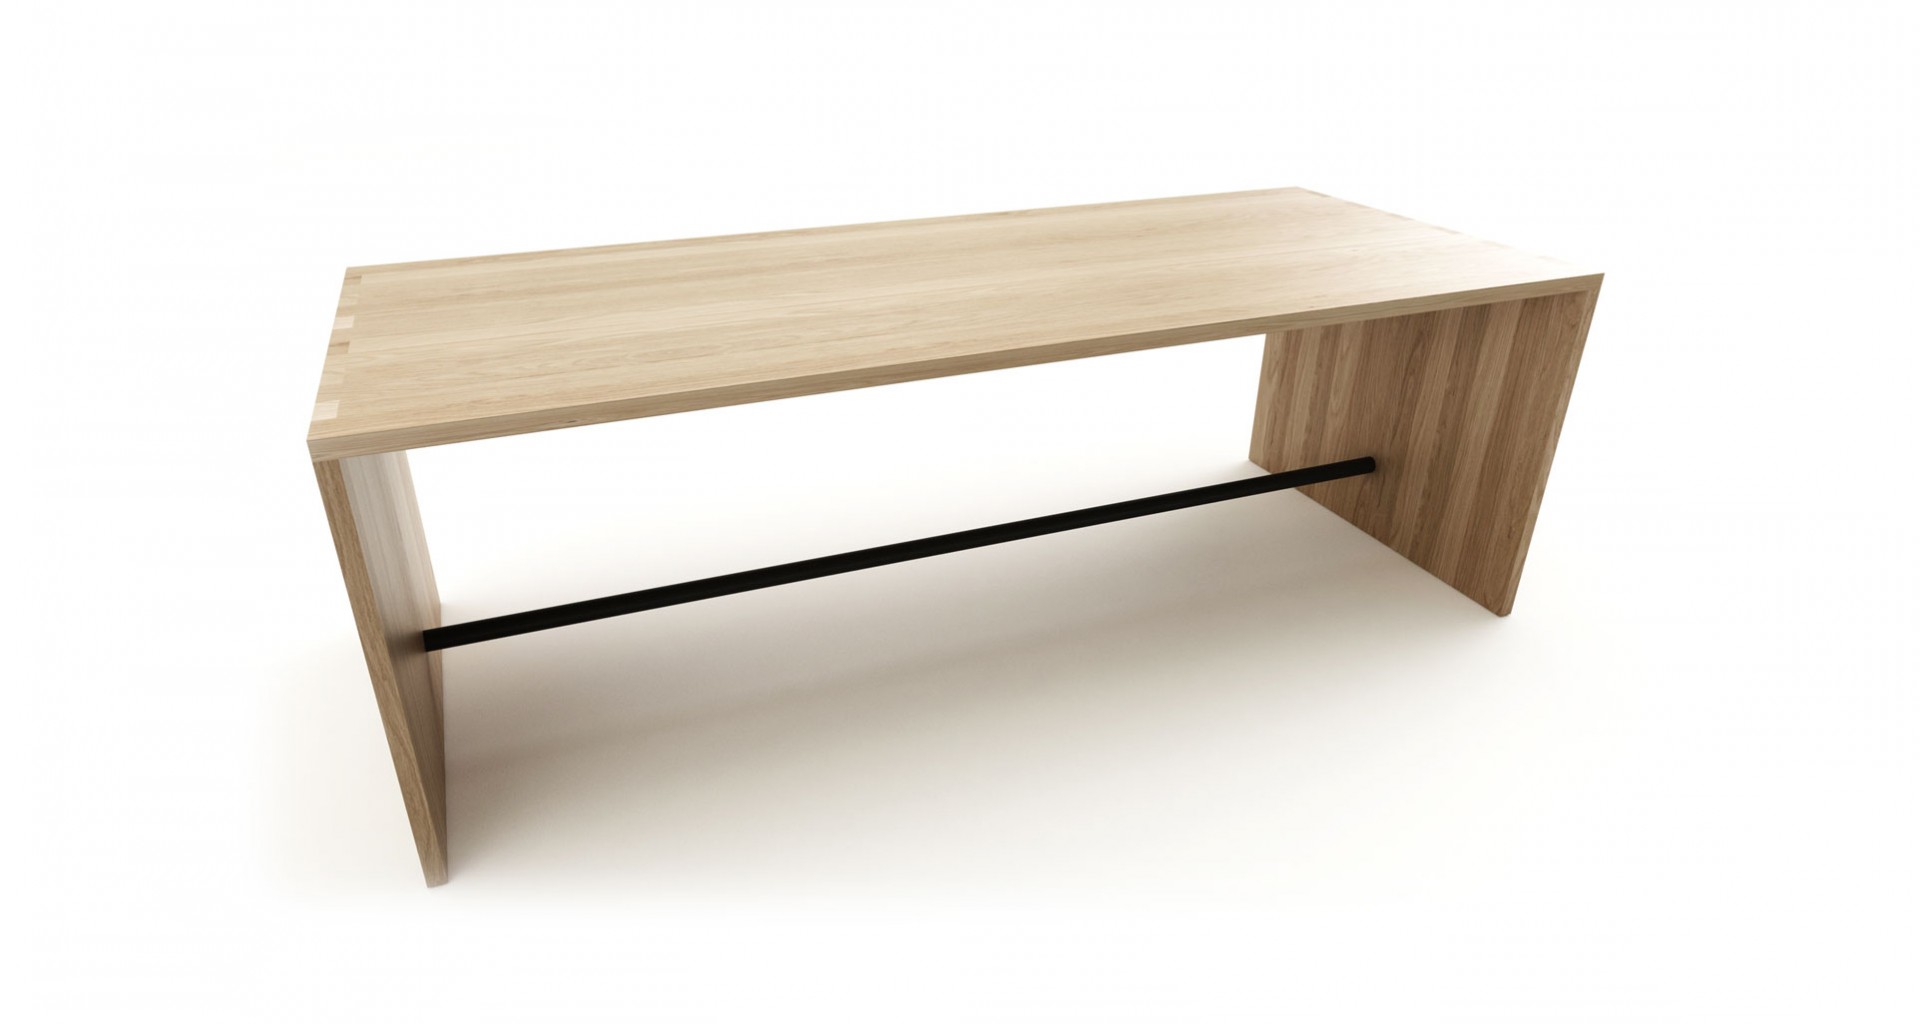 Masívny jedálenský stôl PLAN z dubového dreva, dubový minimalistický stôl, masívny dubový jedálenský stôl